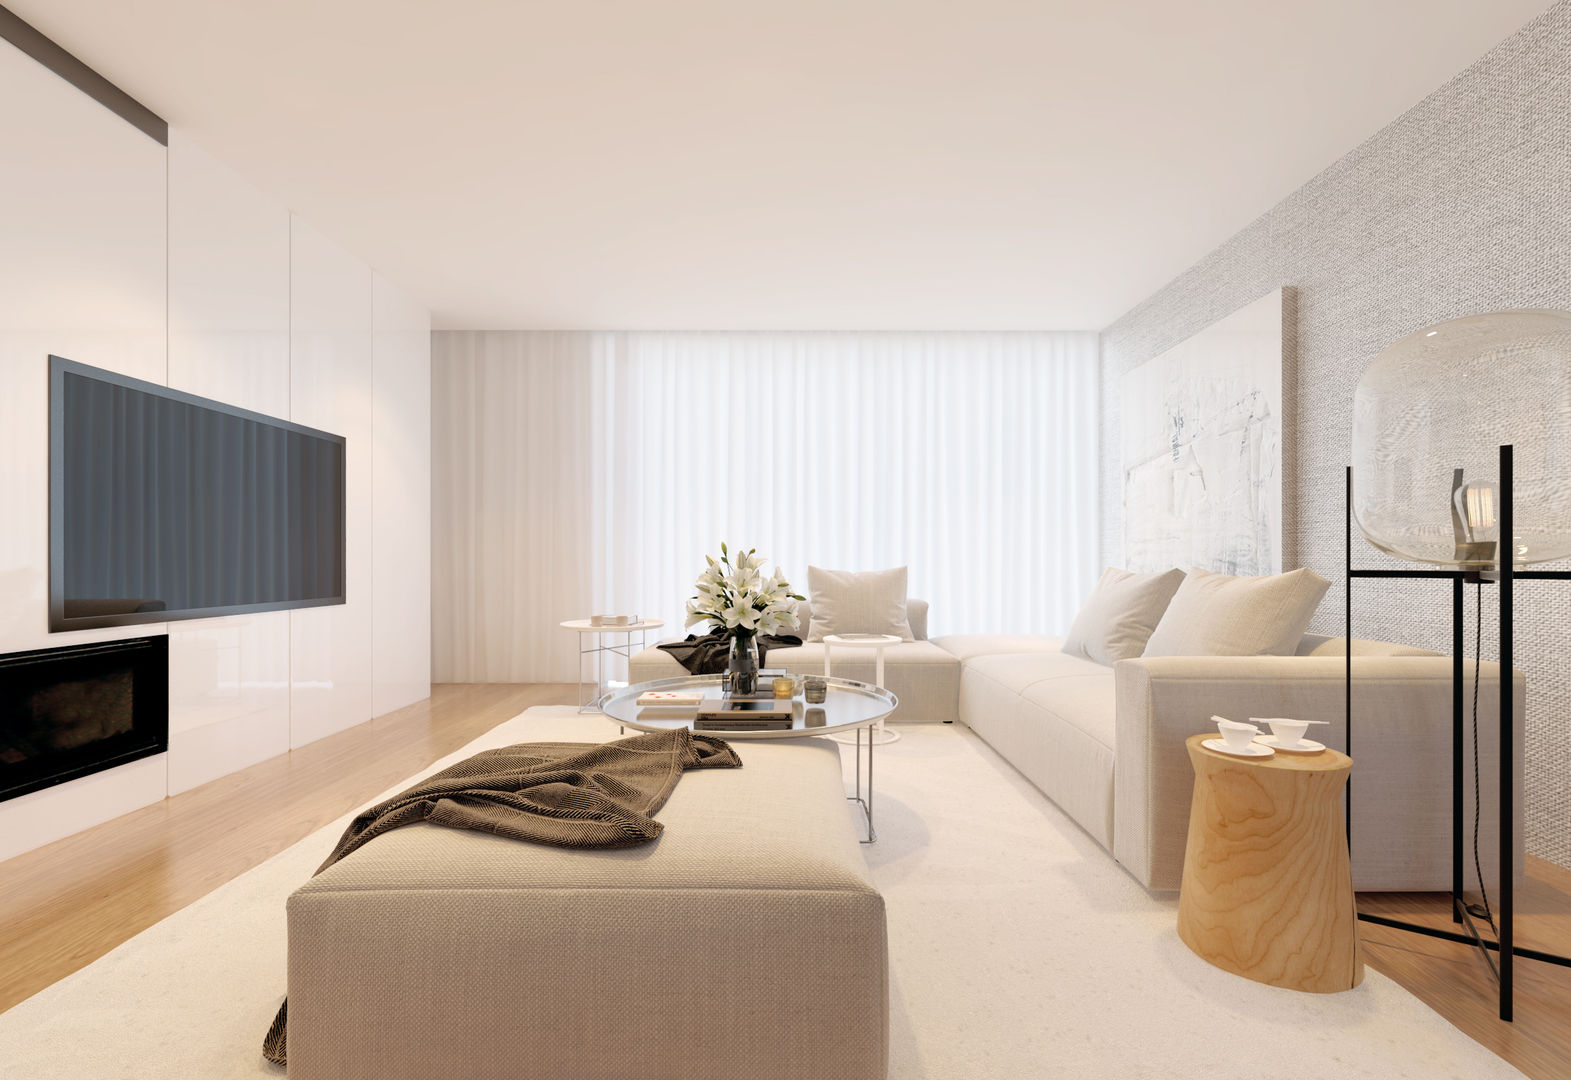 Remodelação de Apartamento no Parque das Exposições- Lisboa, 10Place - Creating Home 10Place - Creating Home Modern living room